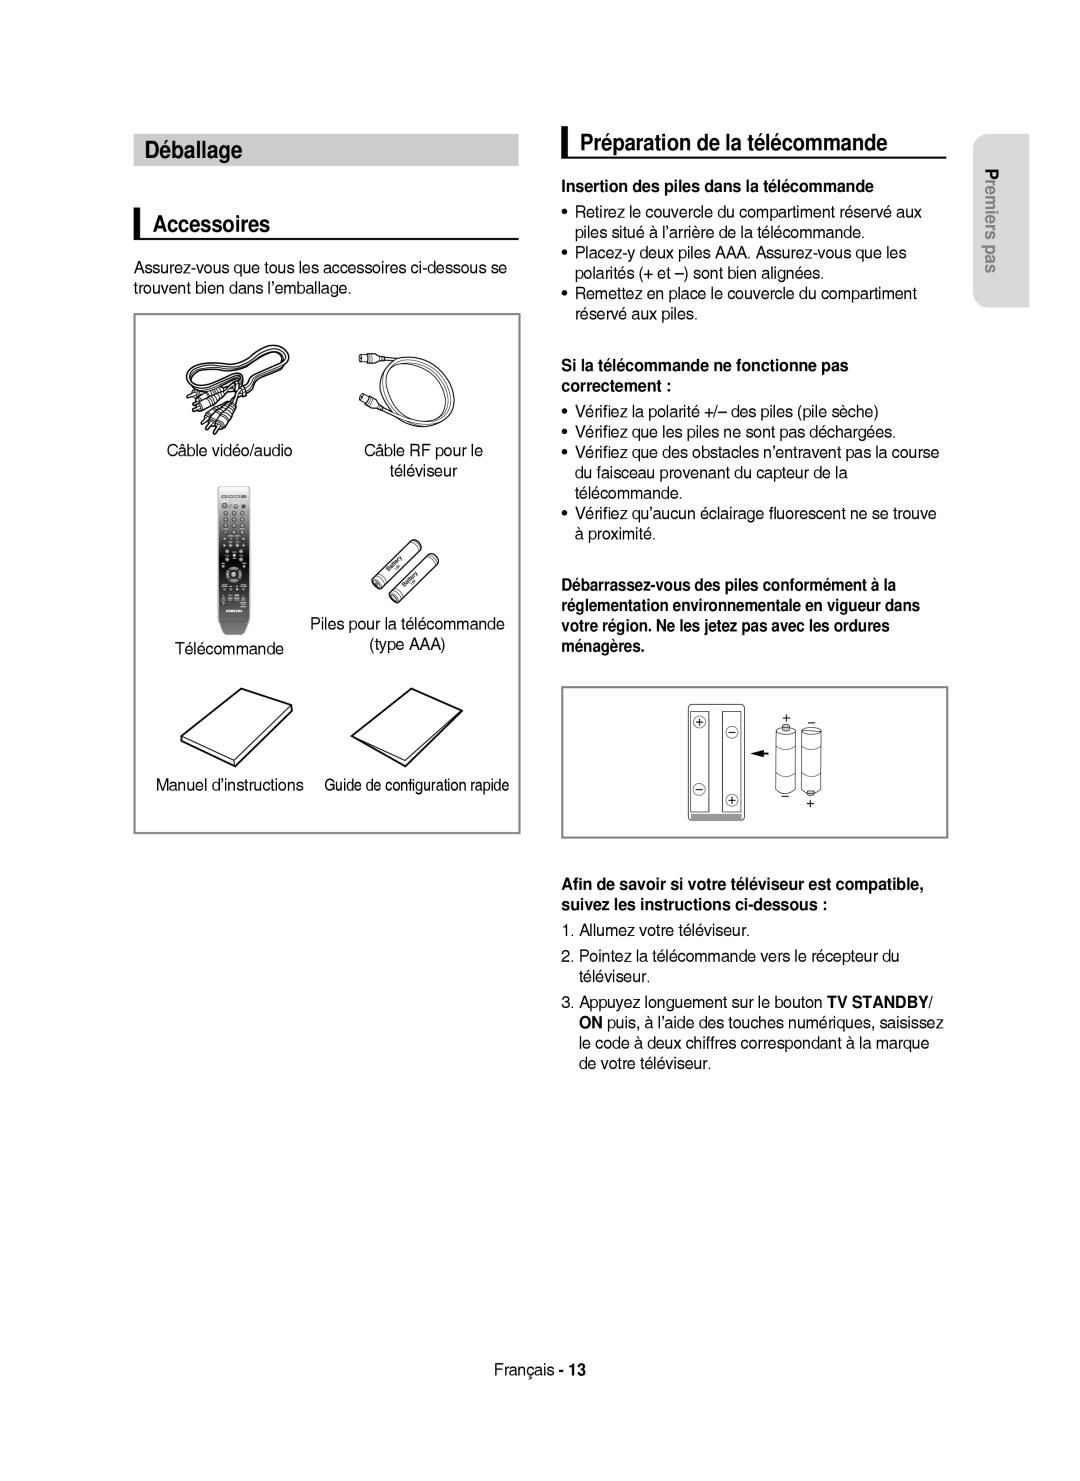 Samsung DVD-HR750/XEG manual Déballage, Préparation de la télécommande, Type AAA, Insertion des piles dans la télécommande 